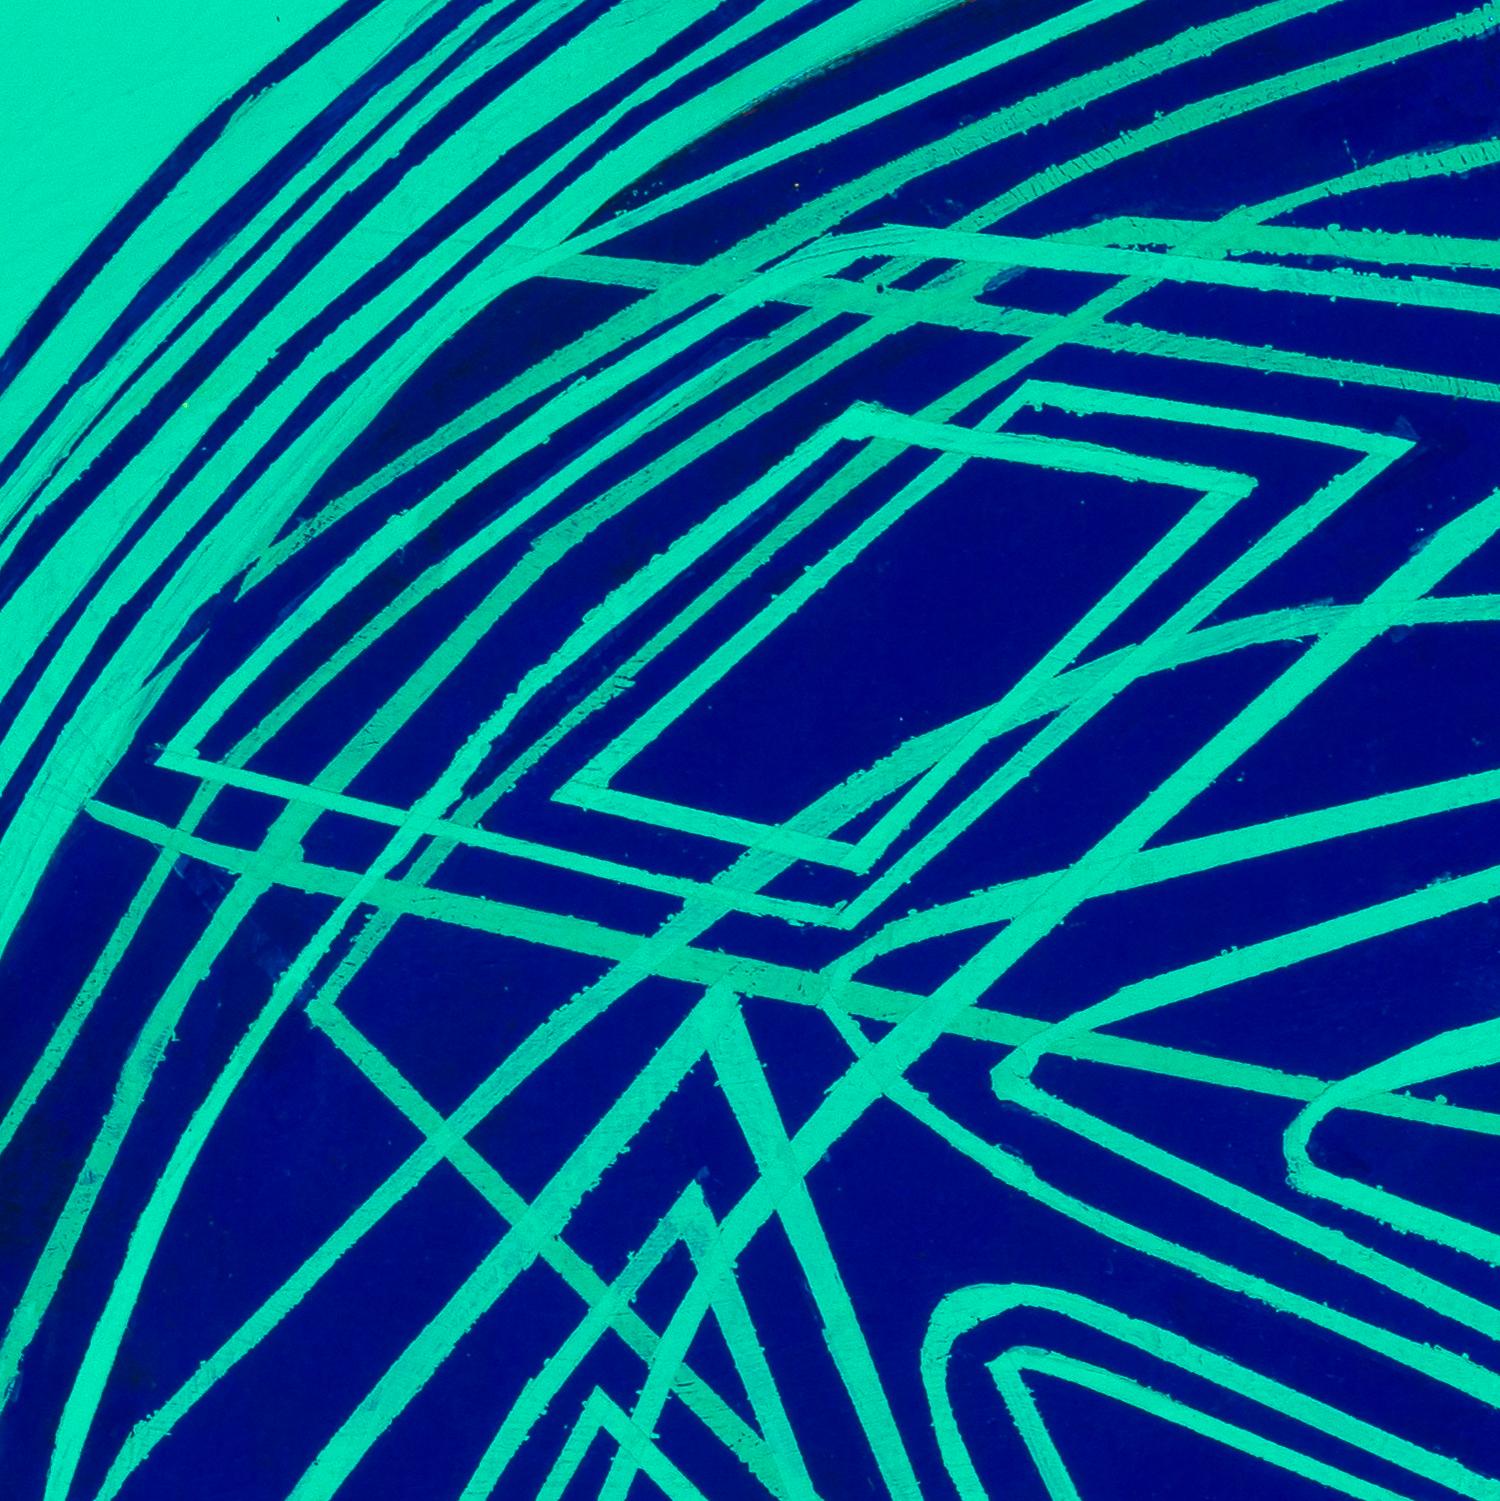 Rundes und rundes: kleines abstraktes Ölgemälde mit kreisförmigen blauen Linien auf Grün-Blau auf Grün-Blau – Painting von Paula Cahill